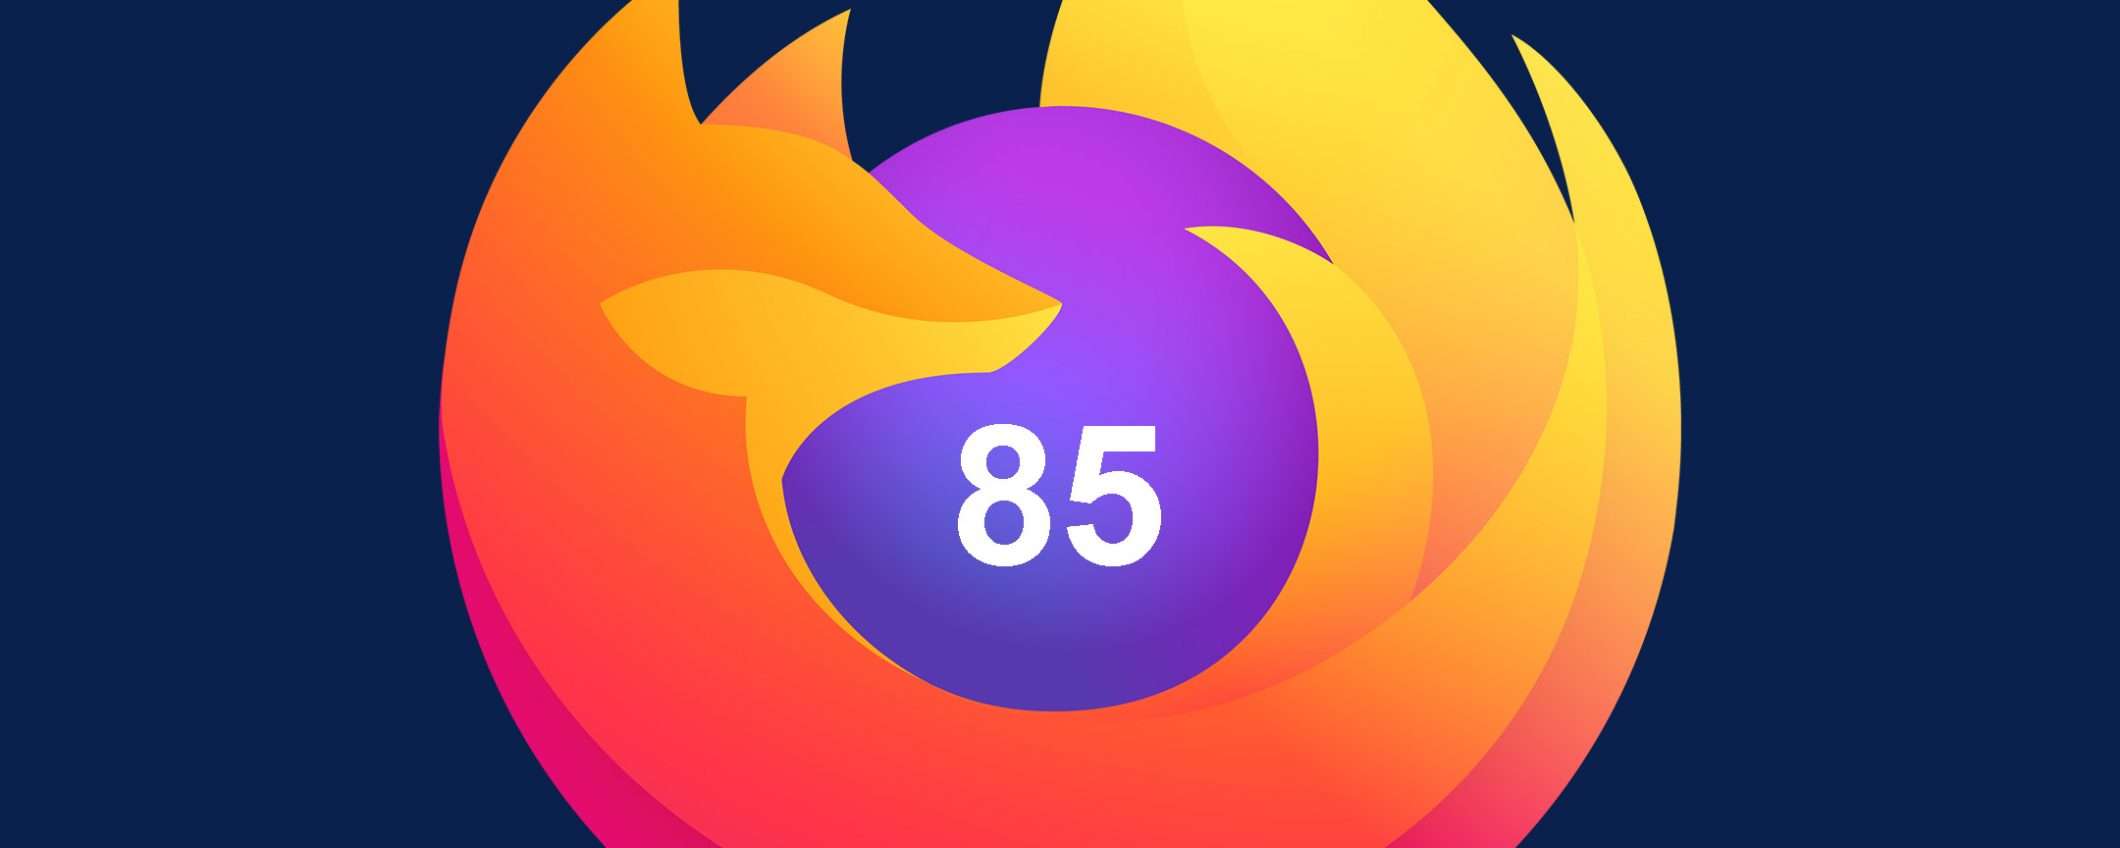 Firefox 85 blocca i supercookie e rimuove Flash